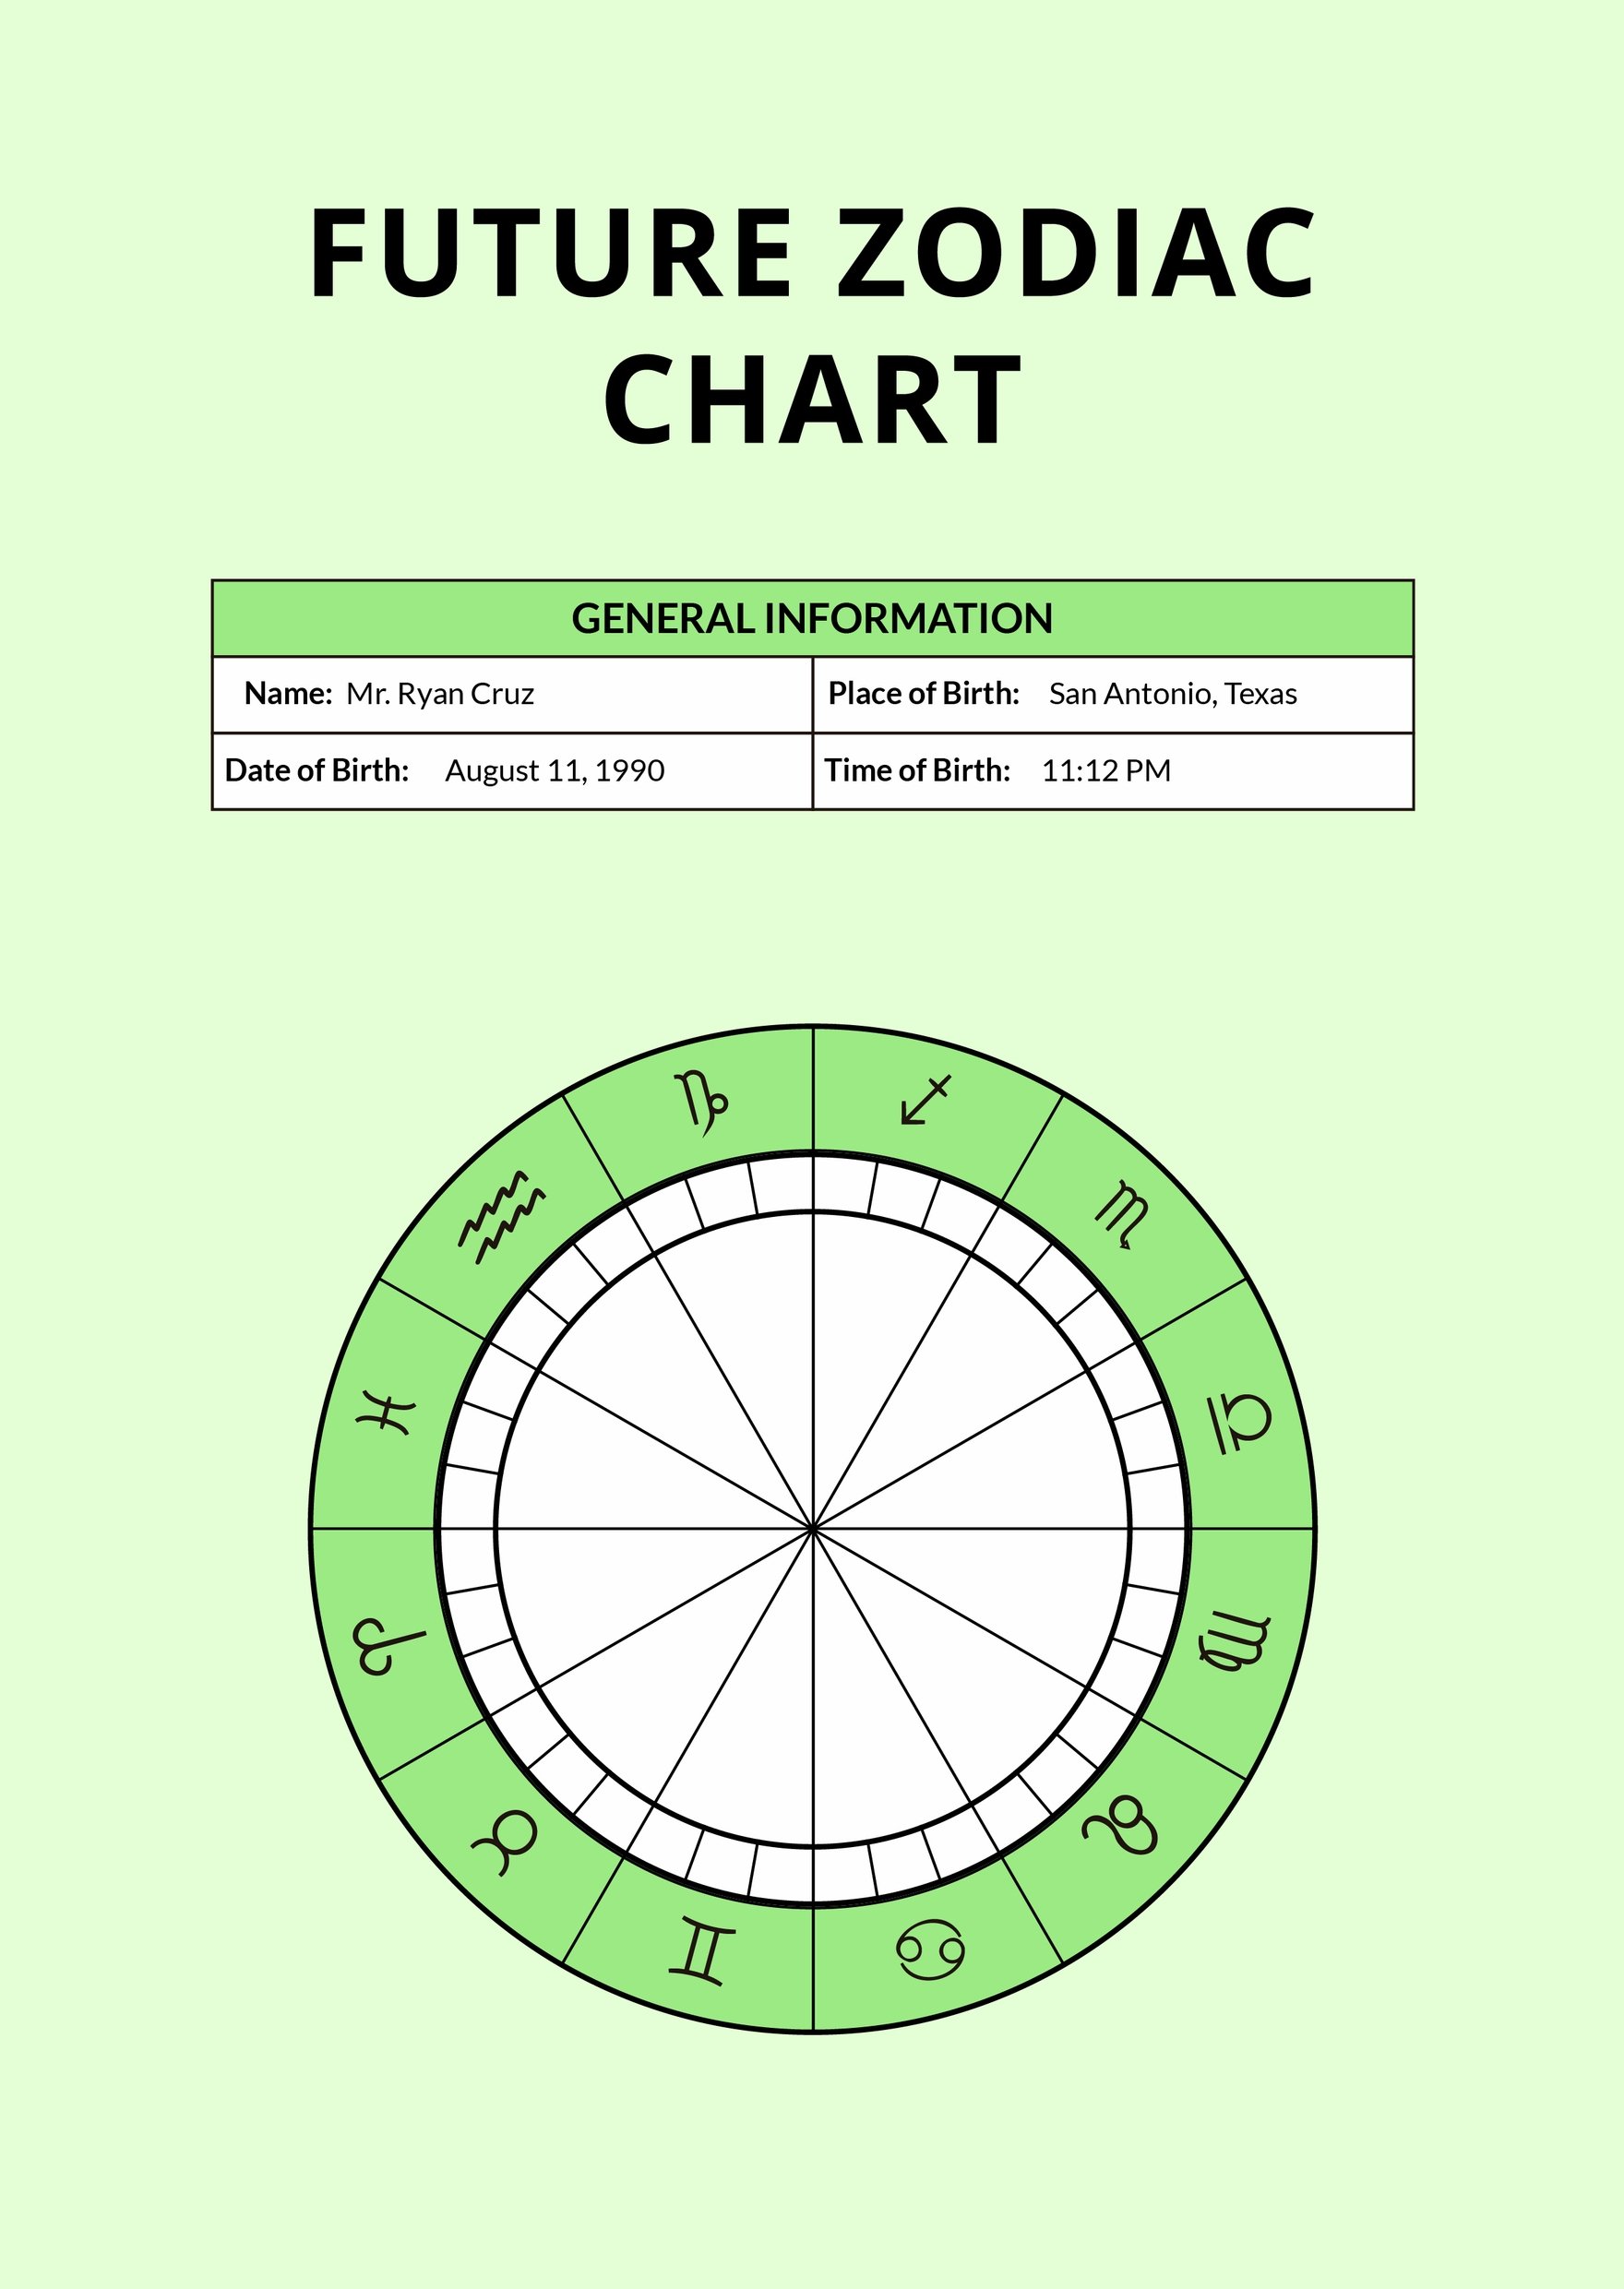 Future Zodiac Chart Template in PDF, Illustrator